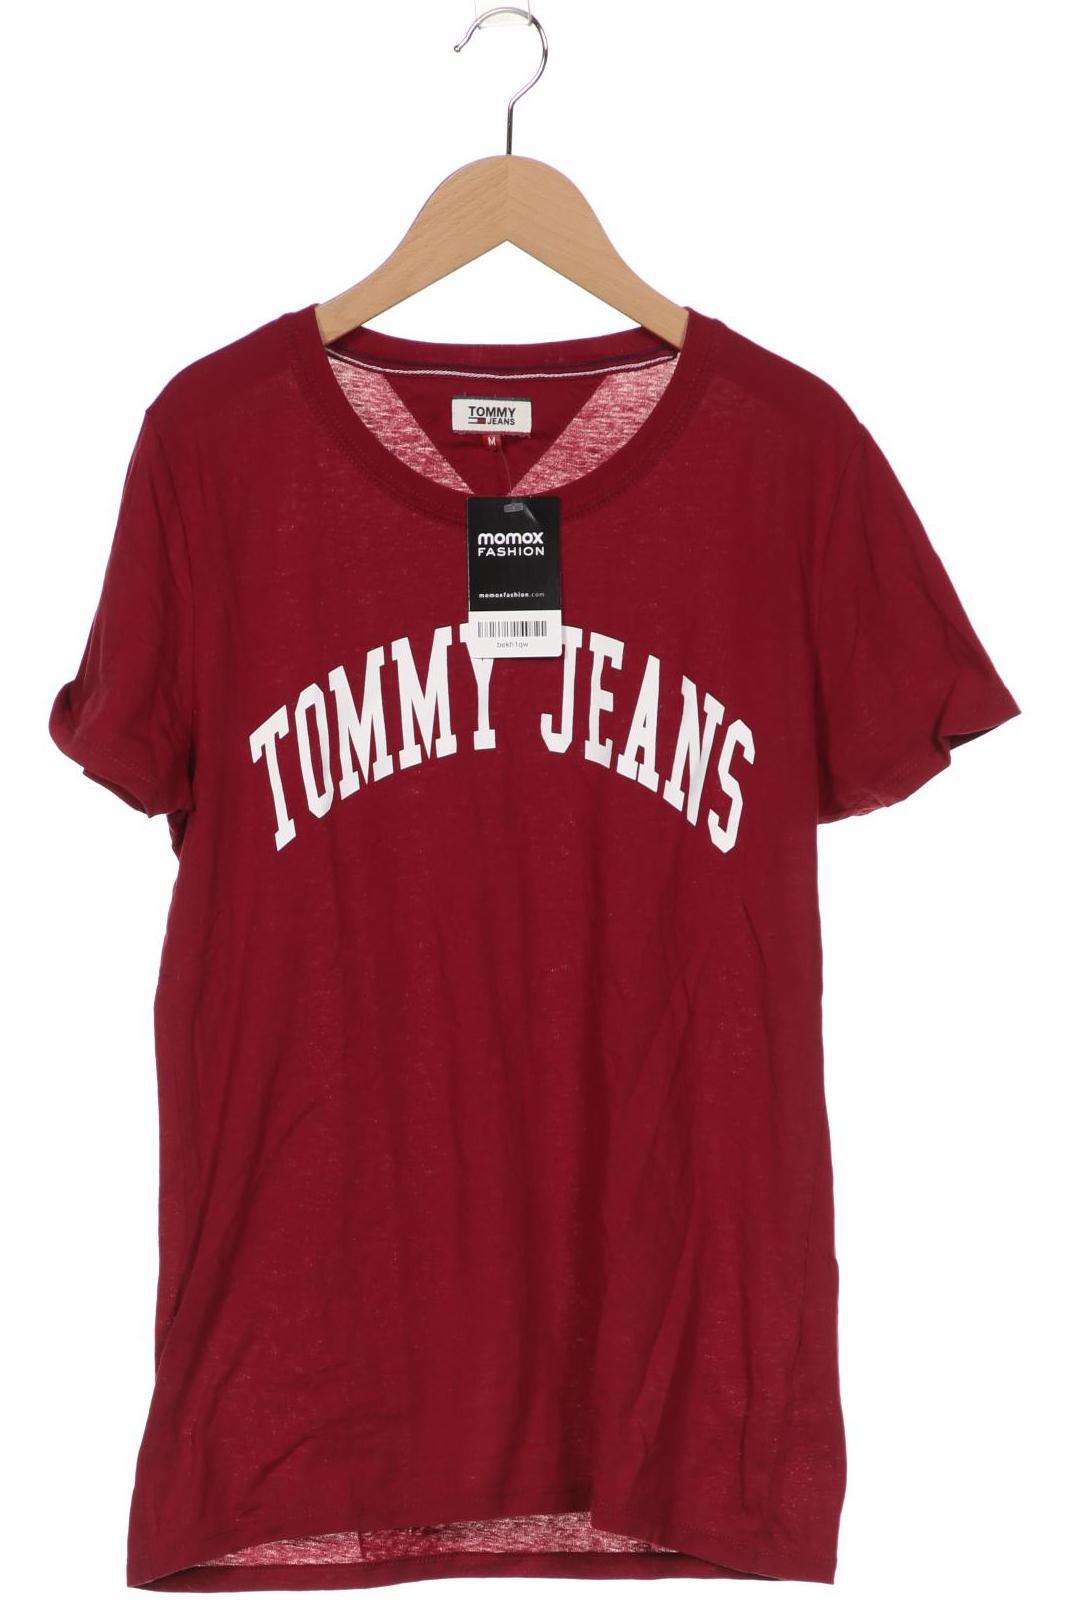 Tommy Jeans Damen T-Shirt, bordeaux, Gr. 38 von Tommy Jeans